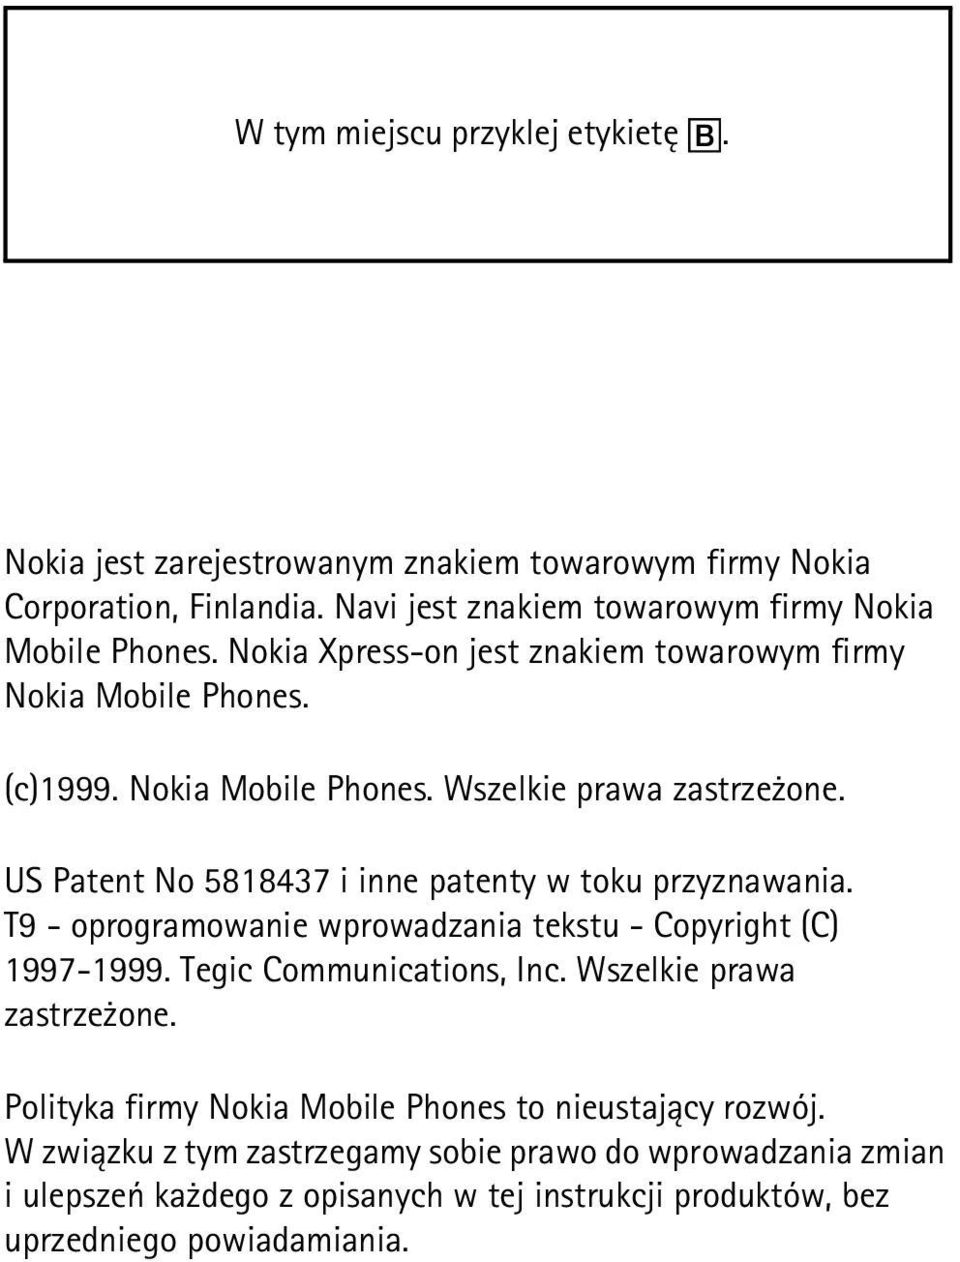 US Patent No 5818437 i inne patenty w toku przyznawania. T9 - oprogramowanie wprowadzania tekstu - Copyright (C) 1997-1999. Tegic Communications, Inc.